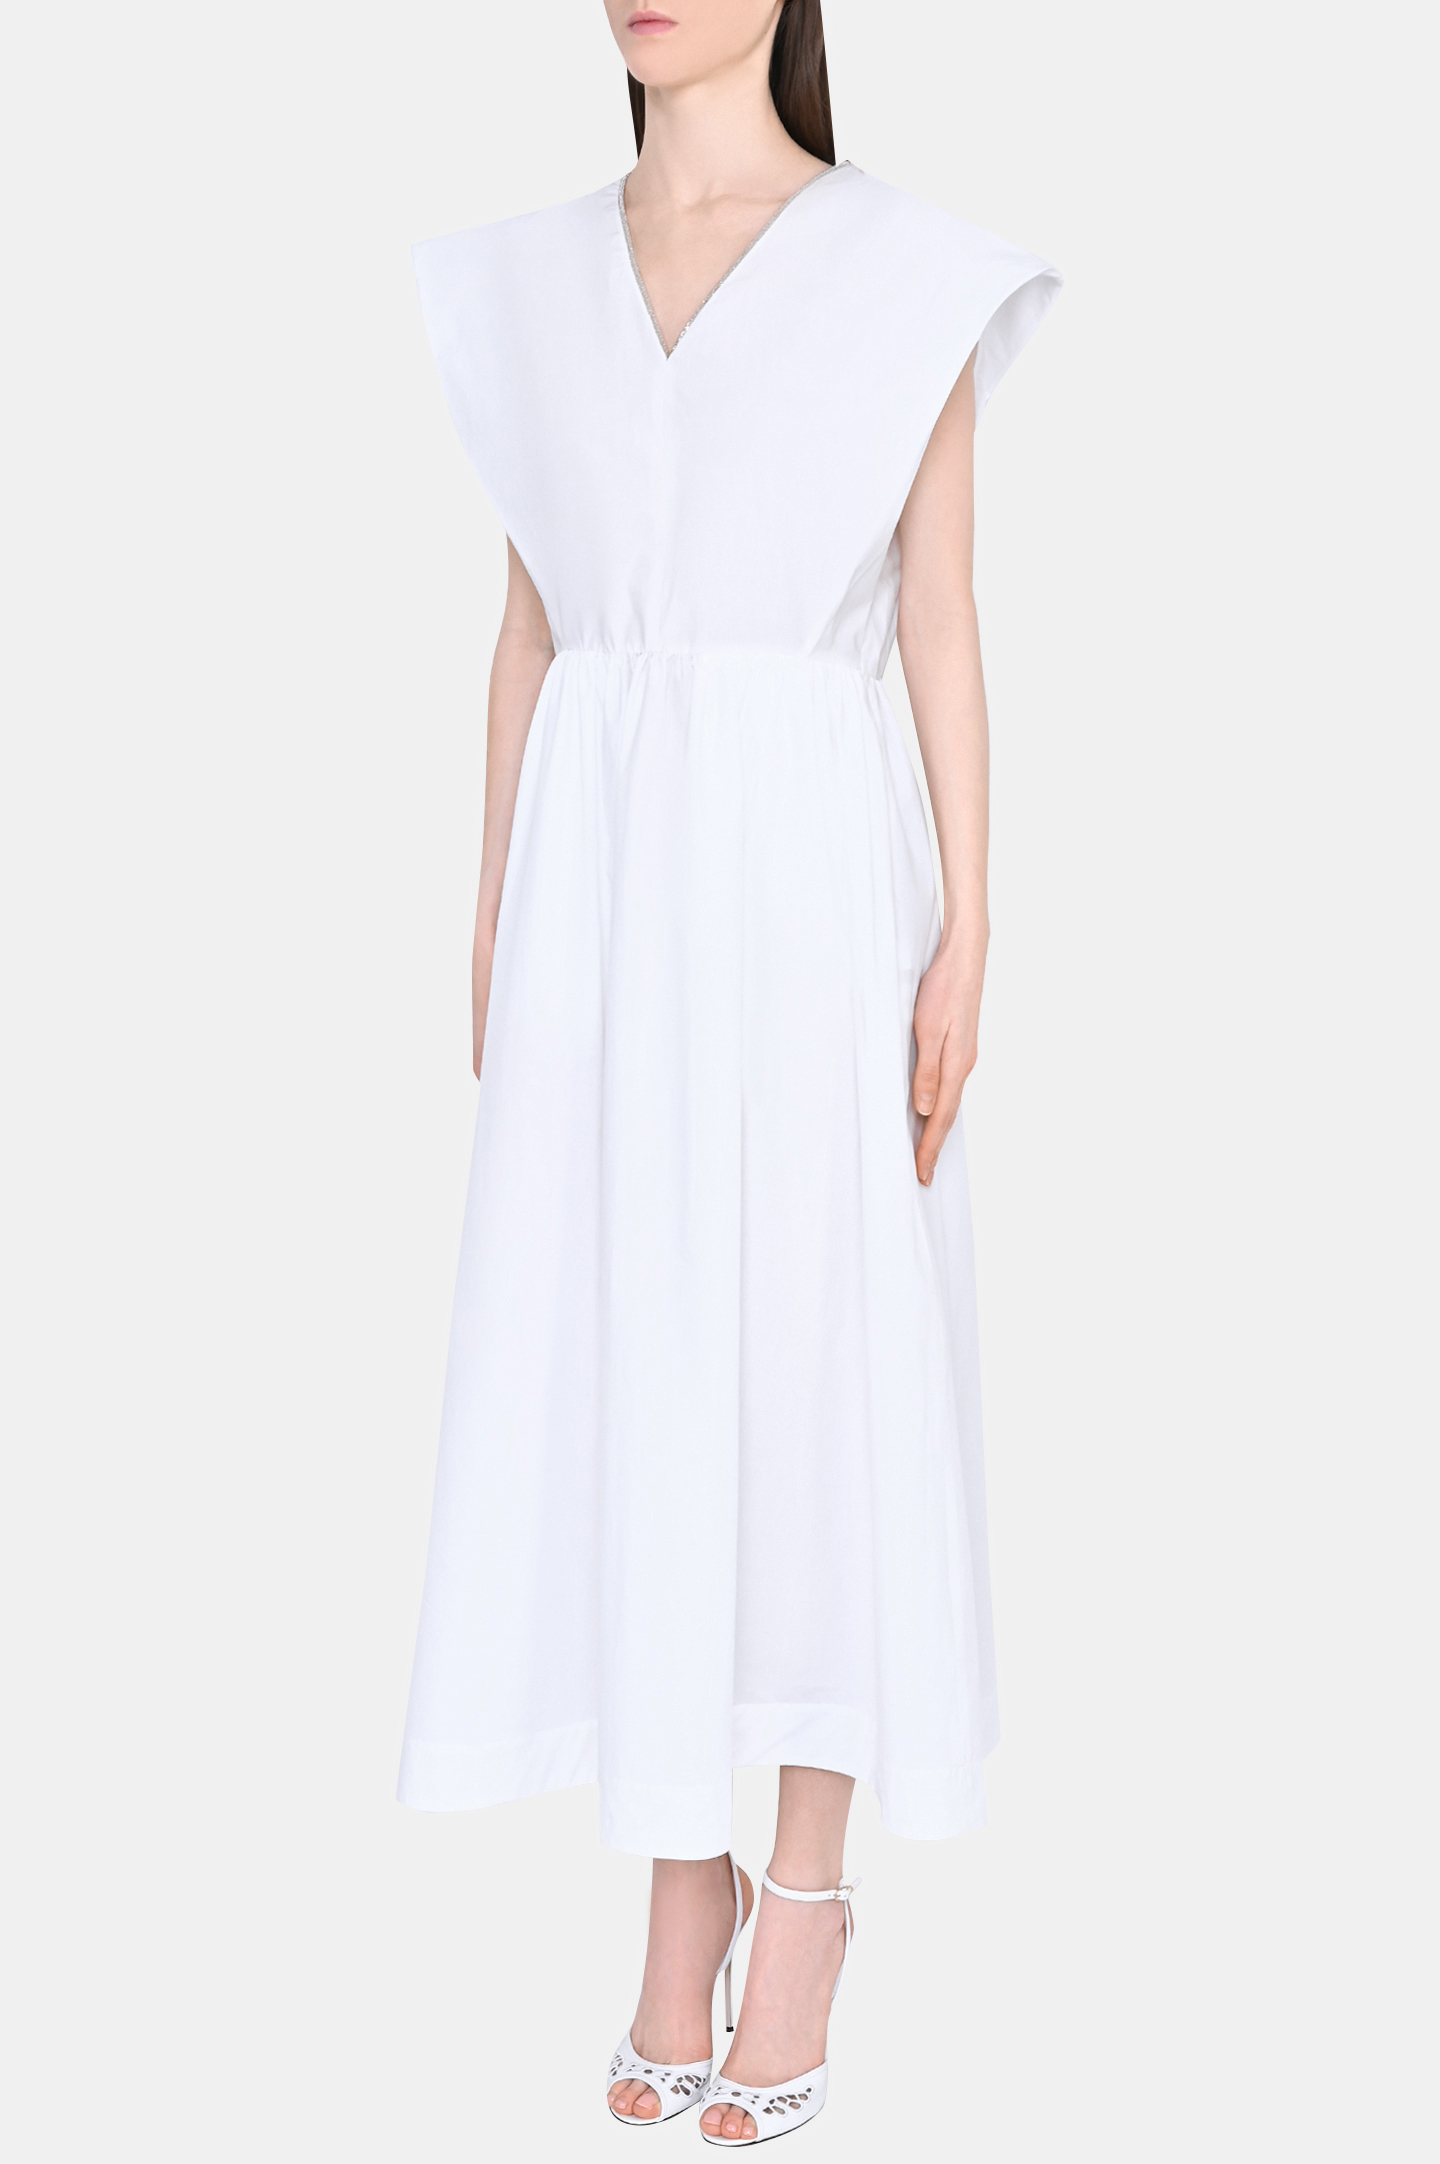 Платье FABIANA FILIPPI ABD273W193D252, цвет: Белый, Женский